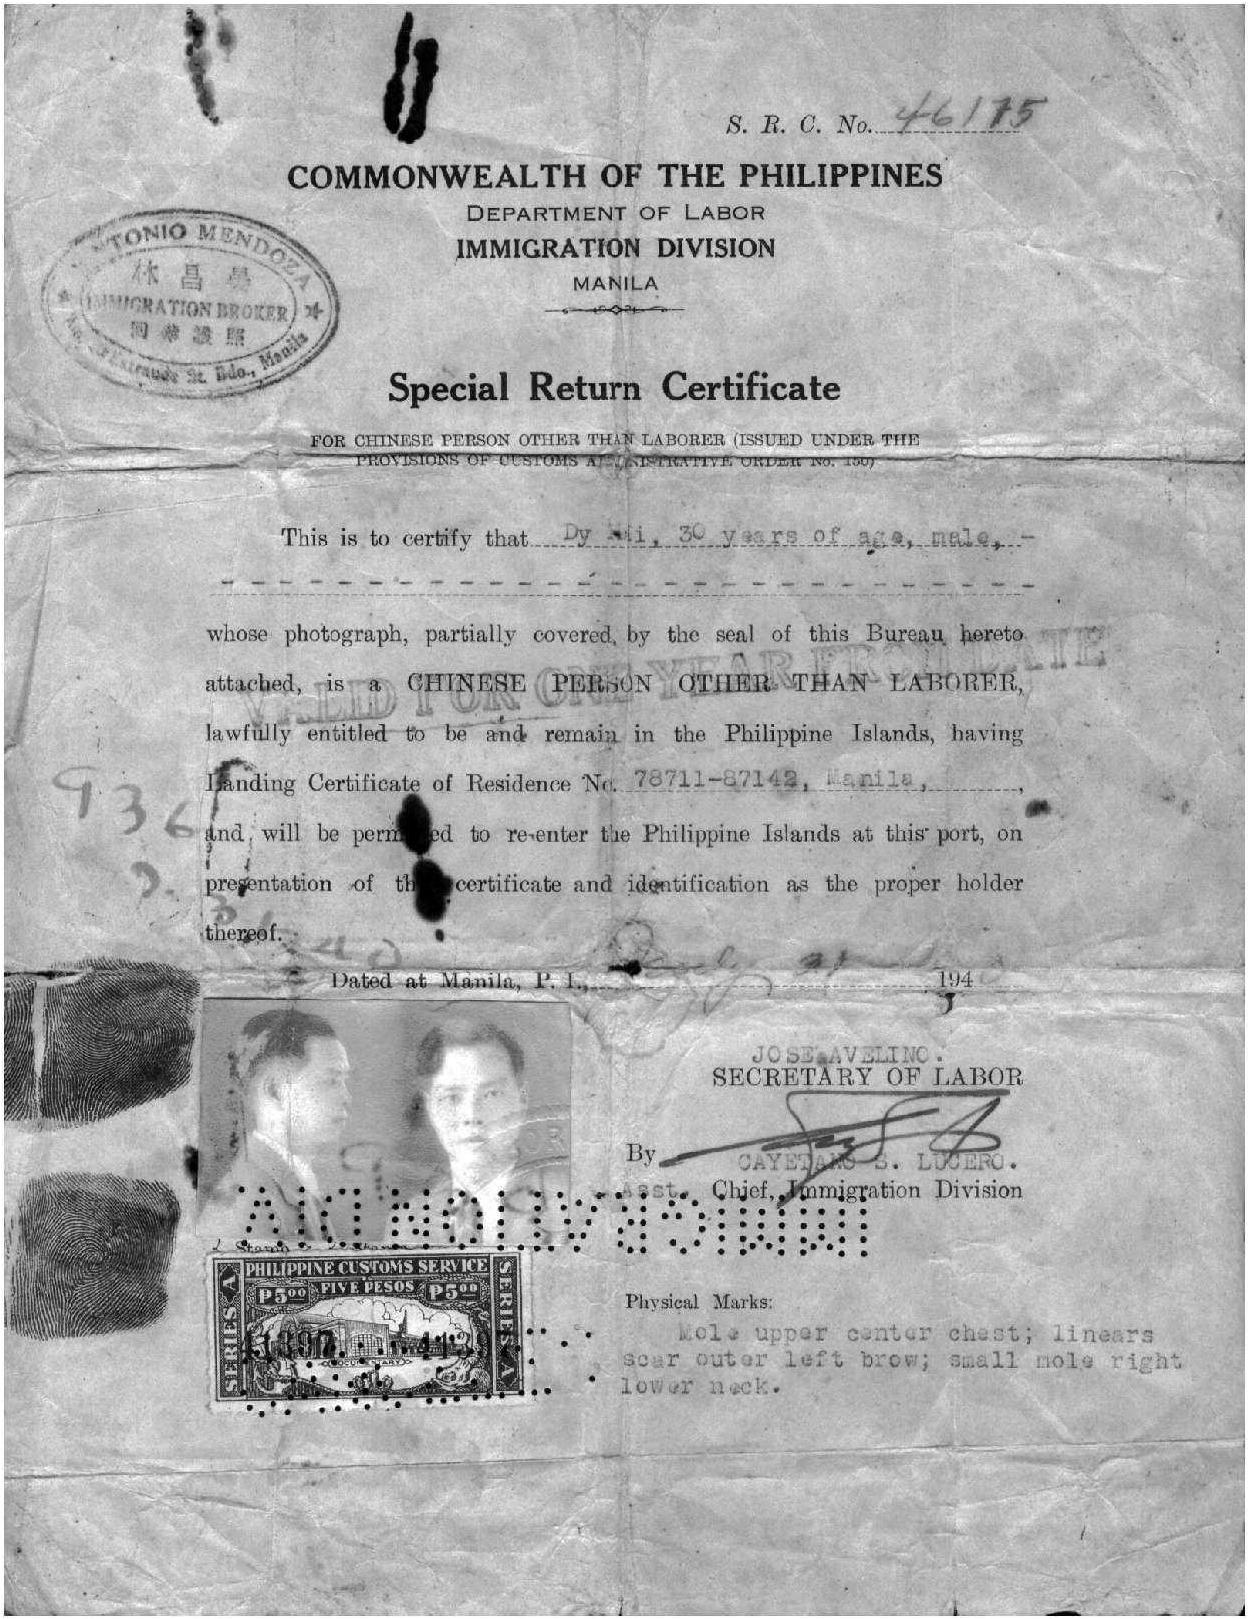 1940年菲律宾劳工部移民局专门为非劳工华人签署的返境证明